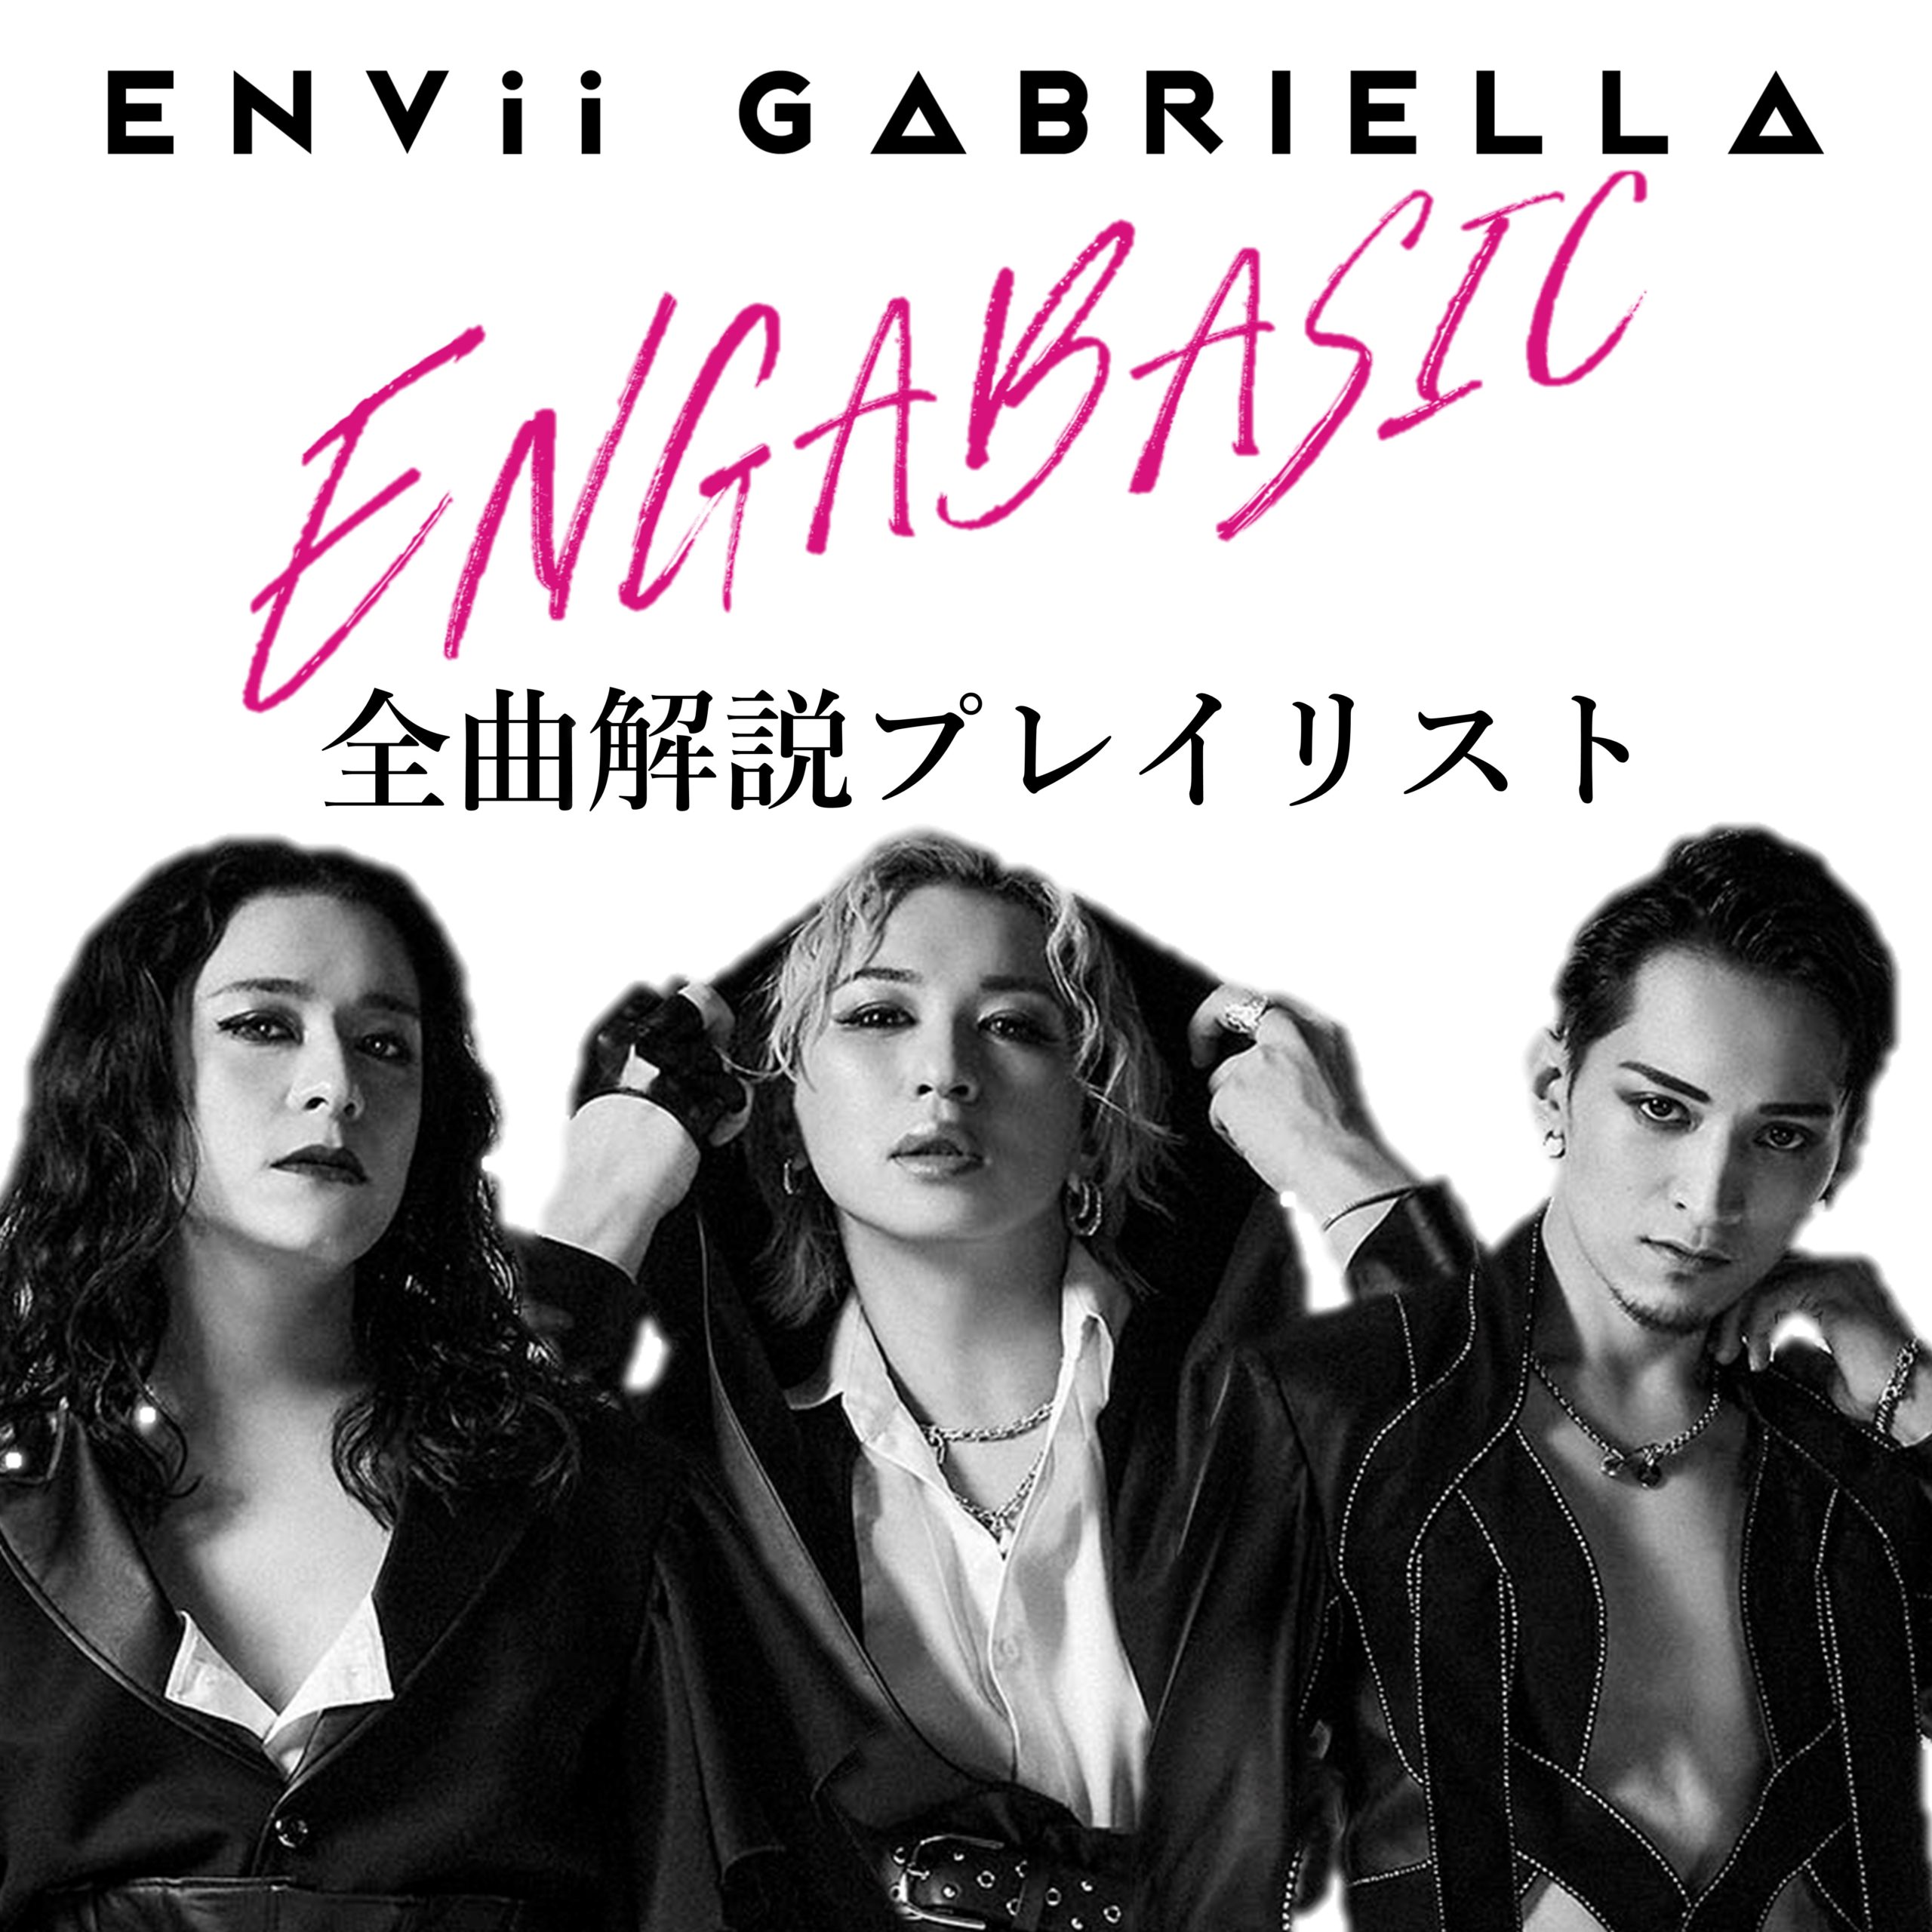 ENVii GABRIELLA『ENGABASIC』全曲解説プレイリスト